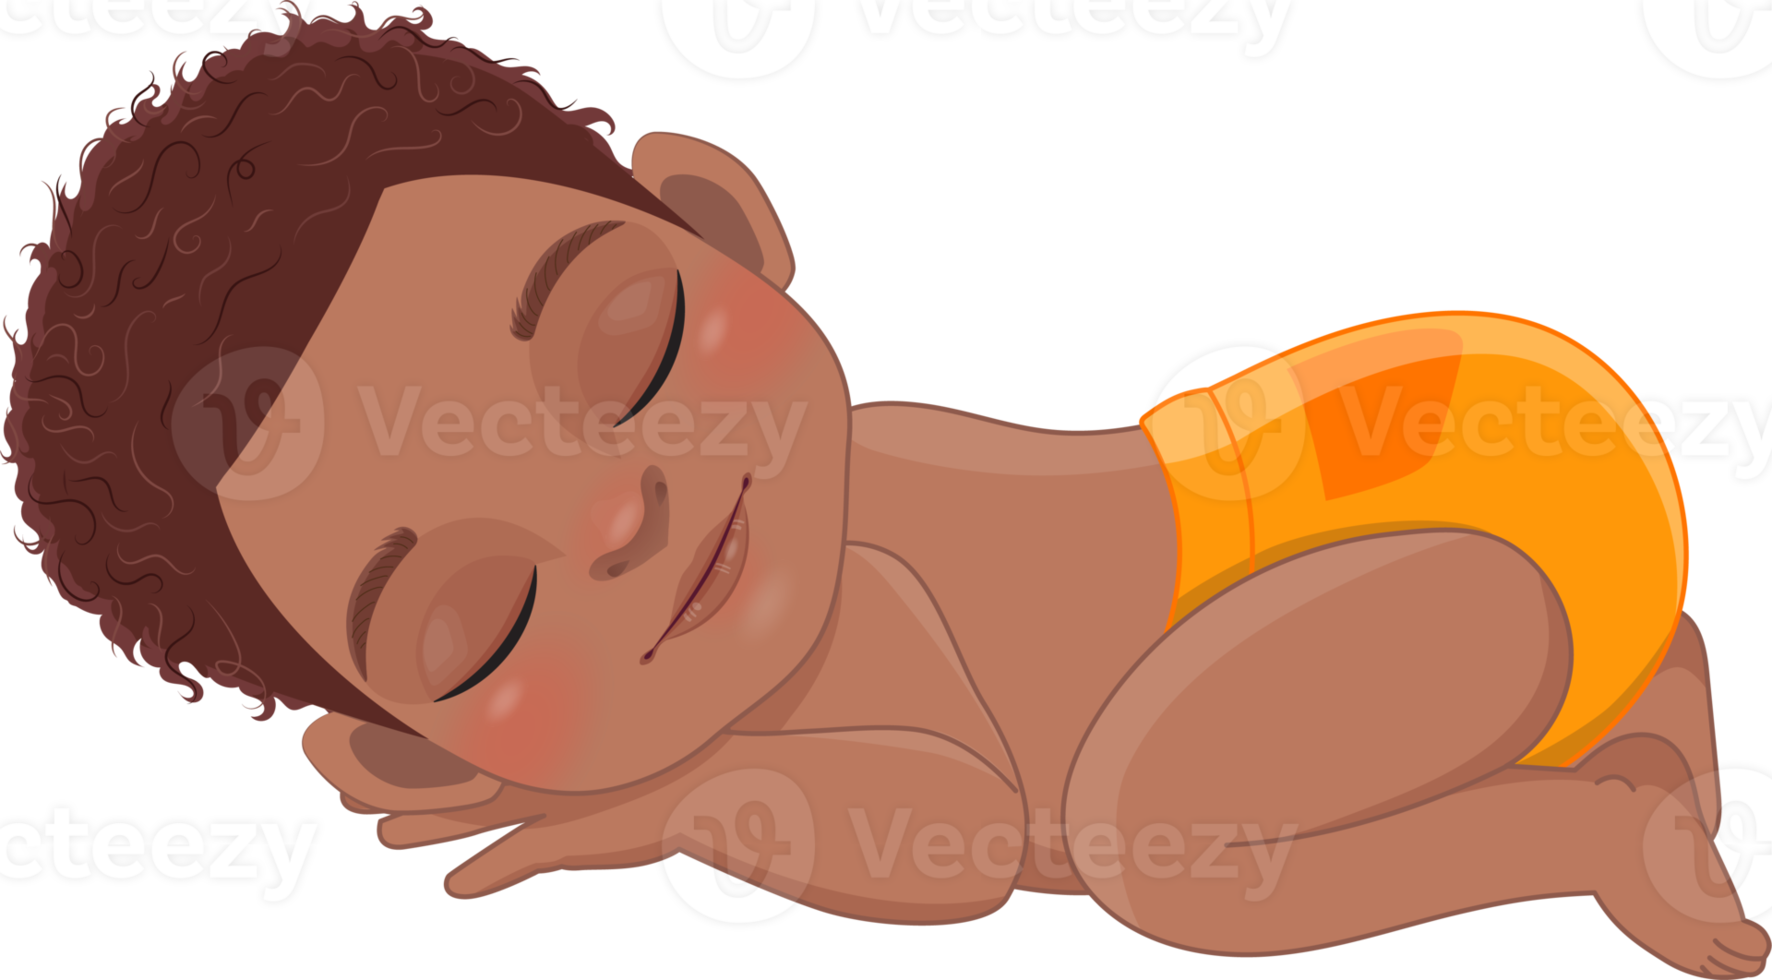 dessin animé personnage en train de dormir noir bébé garçon portant Orange ébouriffé couche dessin animé png